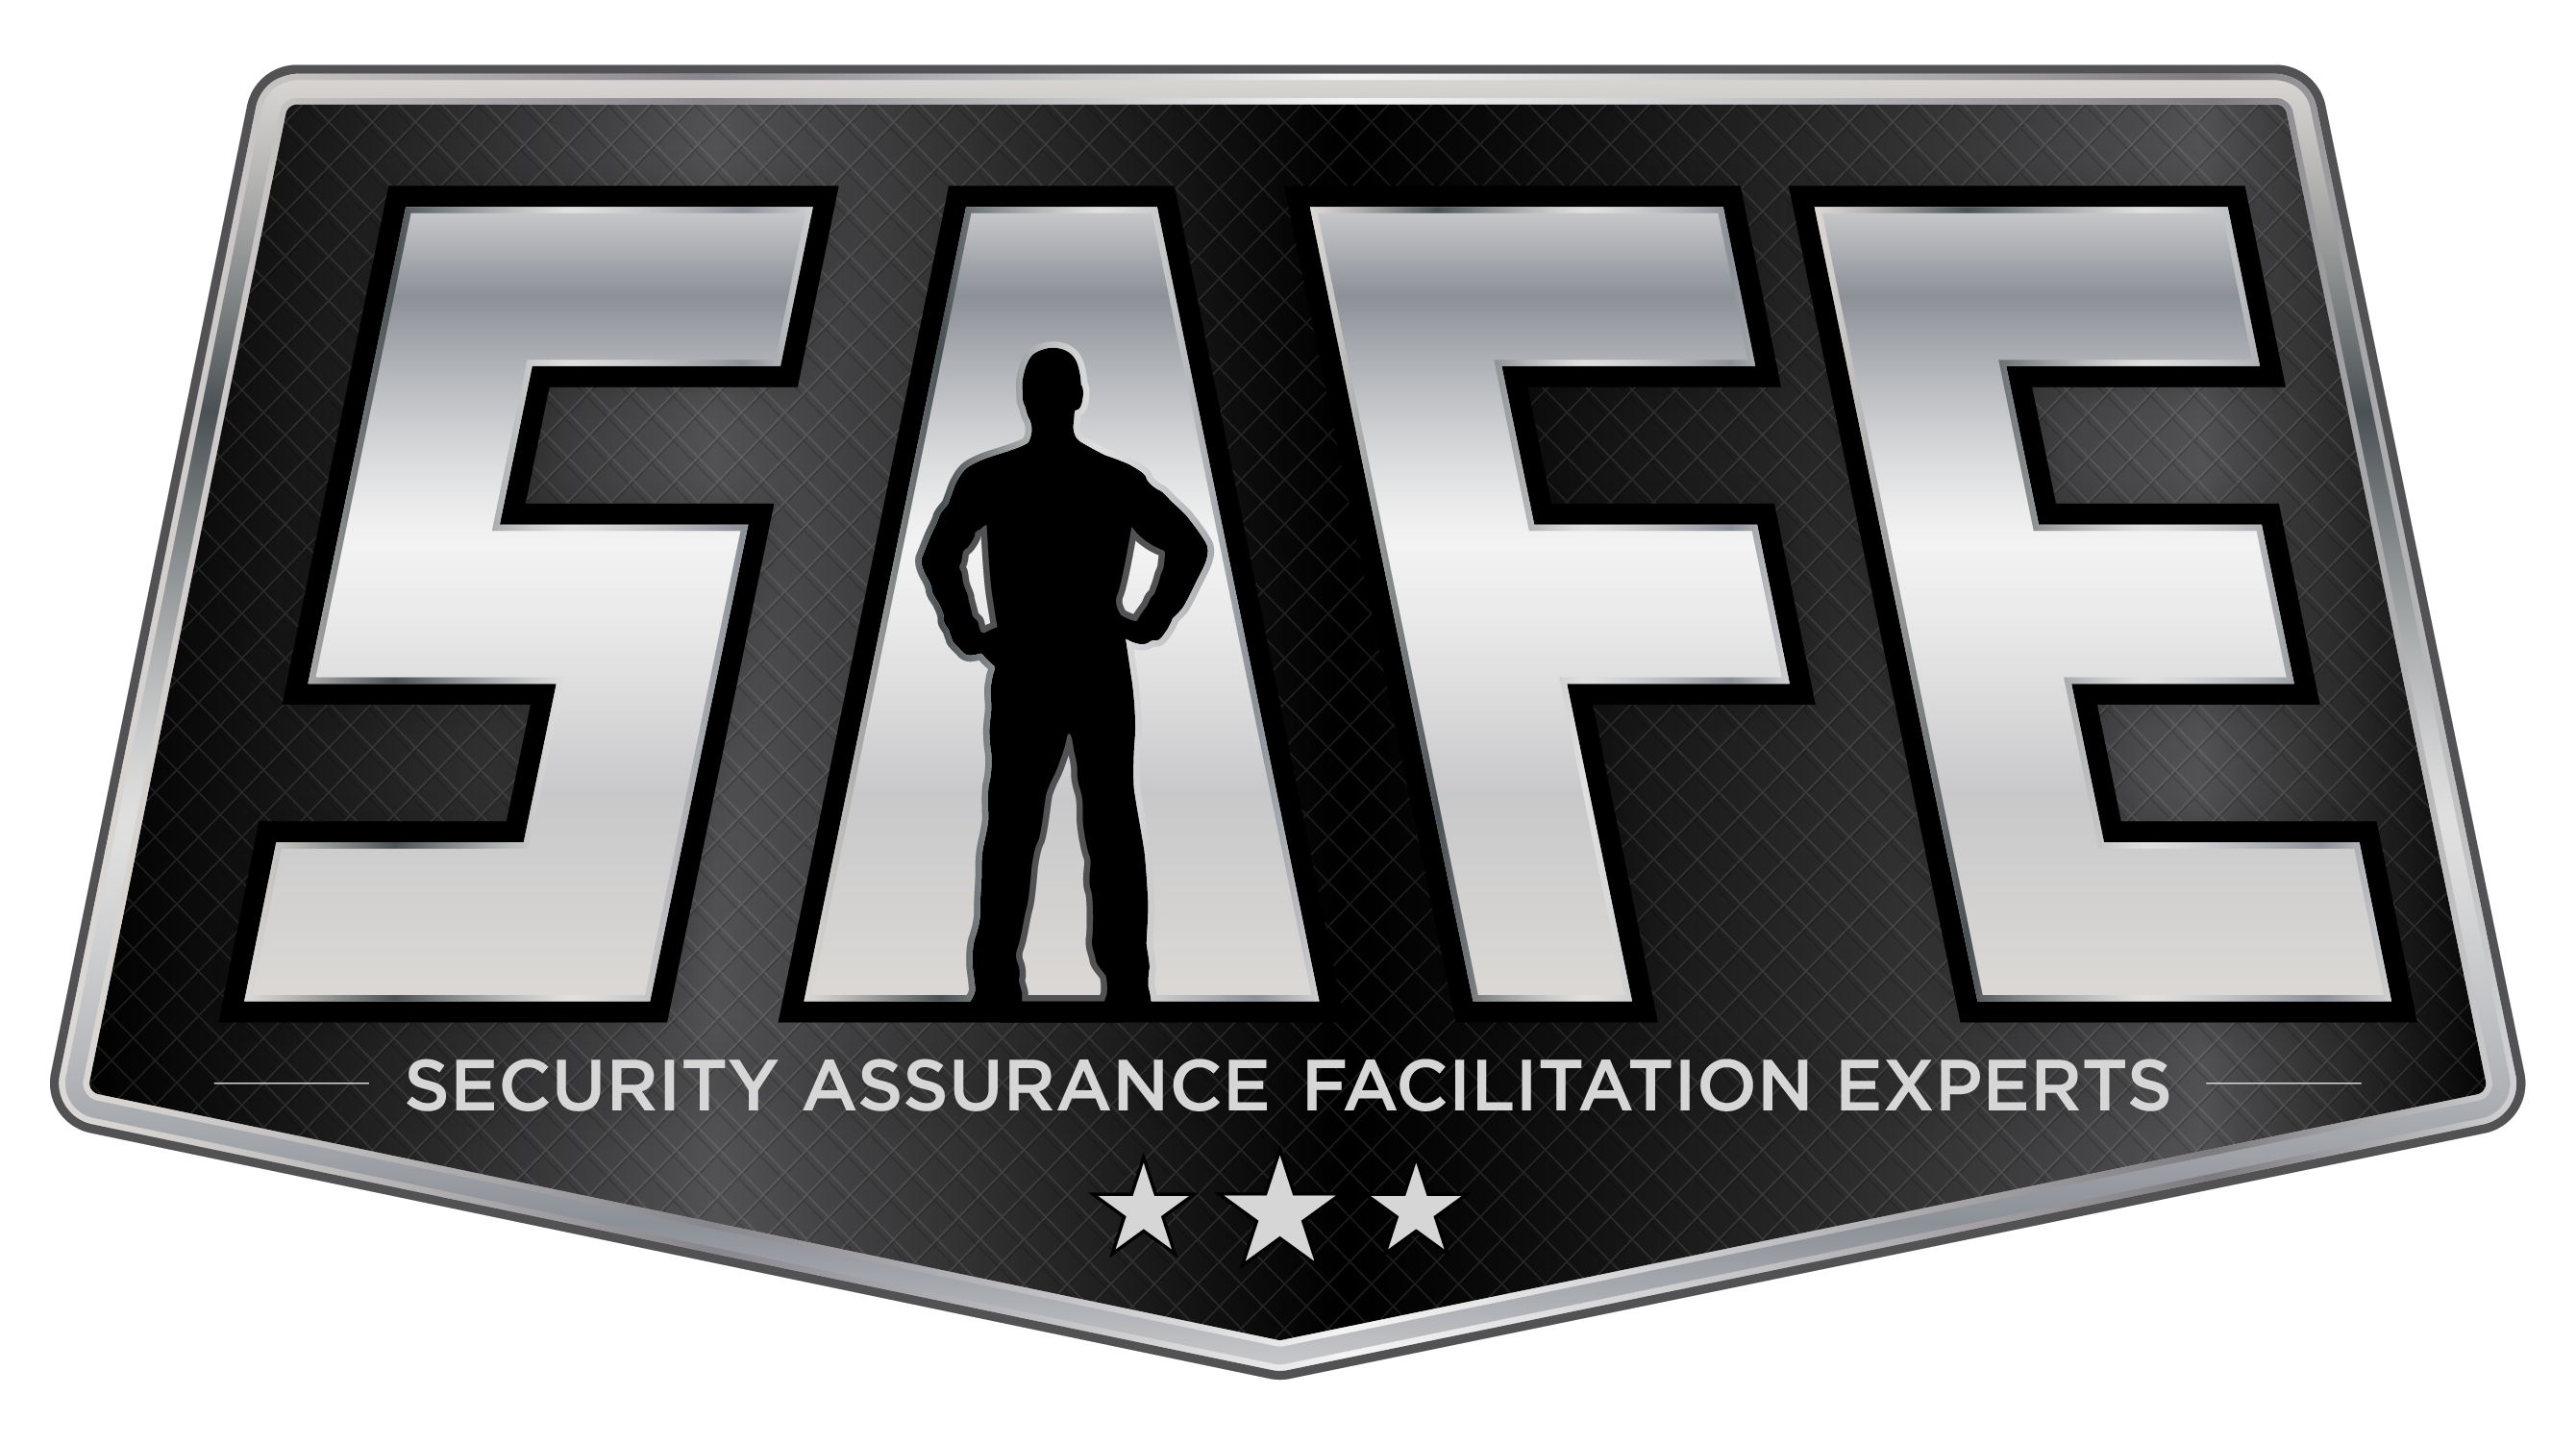 Security Assurance Facilitation Experts